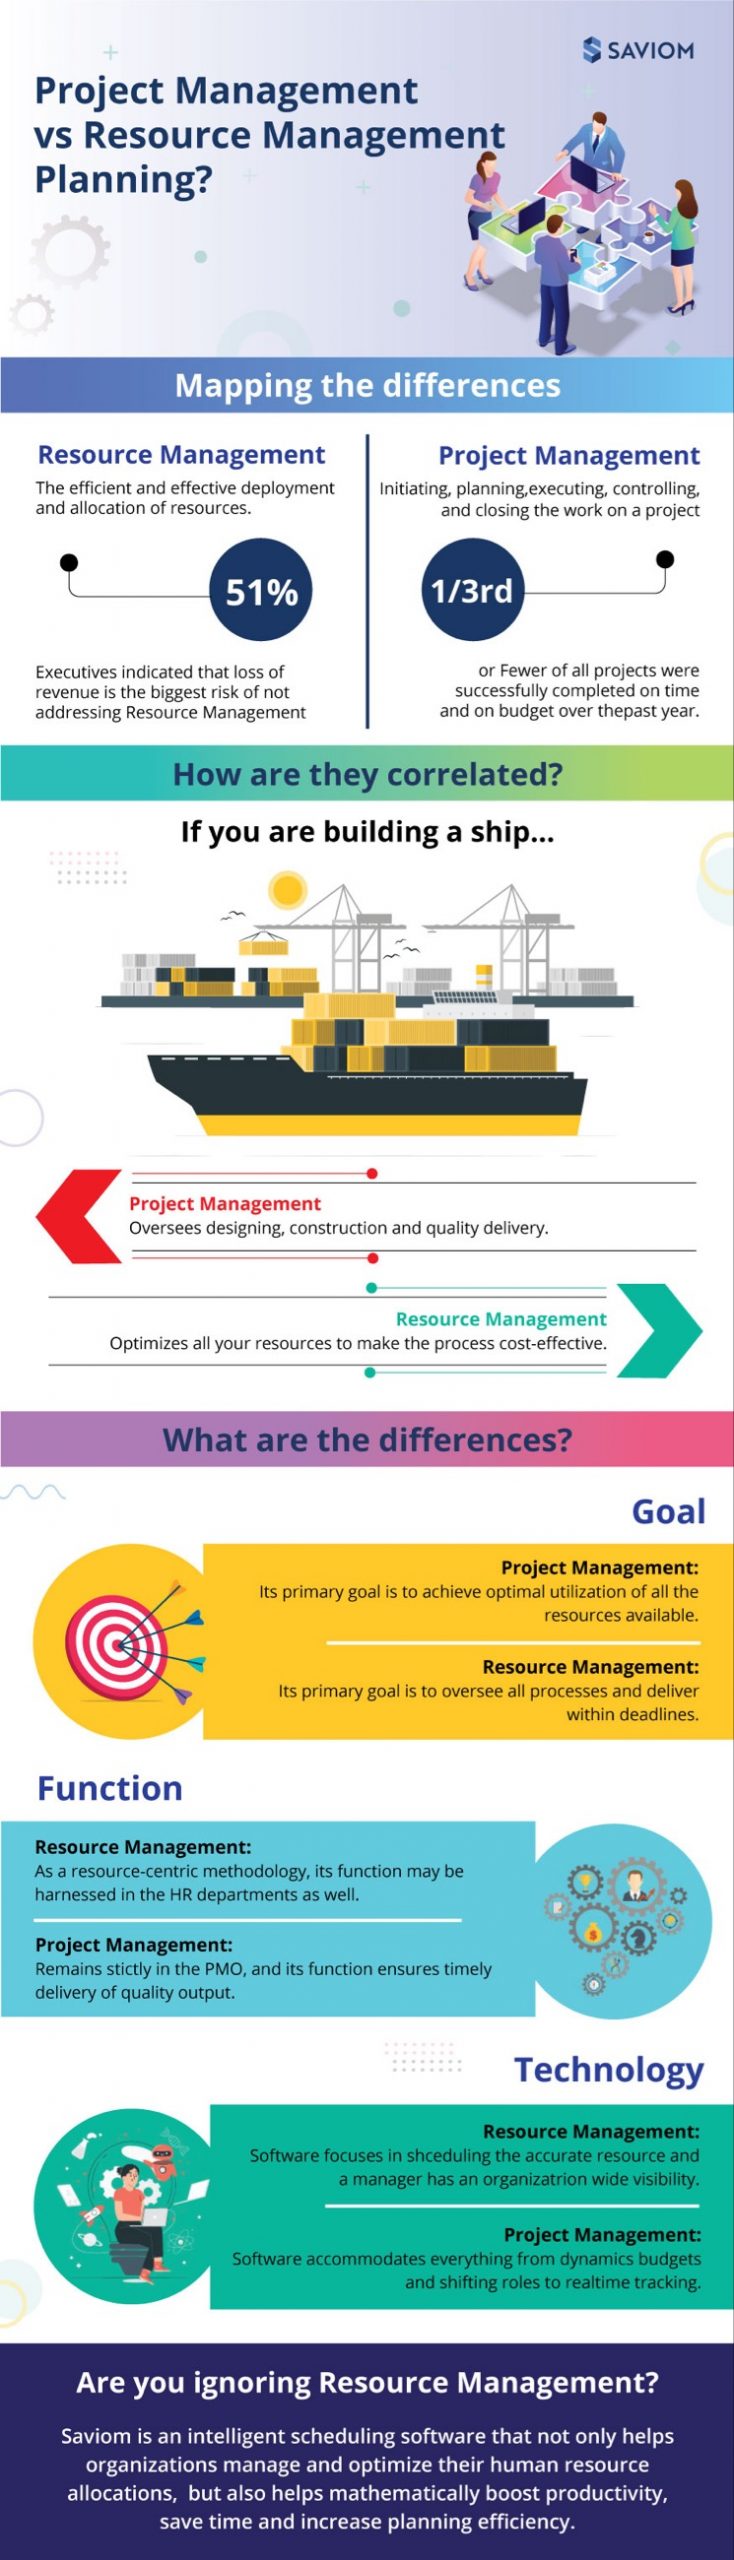 Project Management vs Resource Management